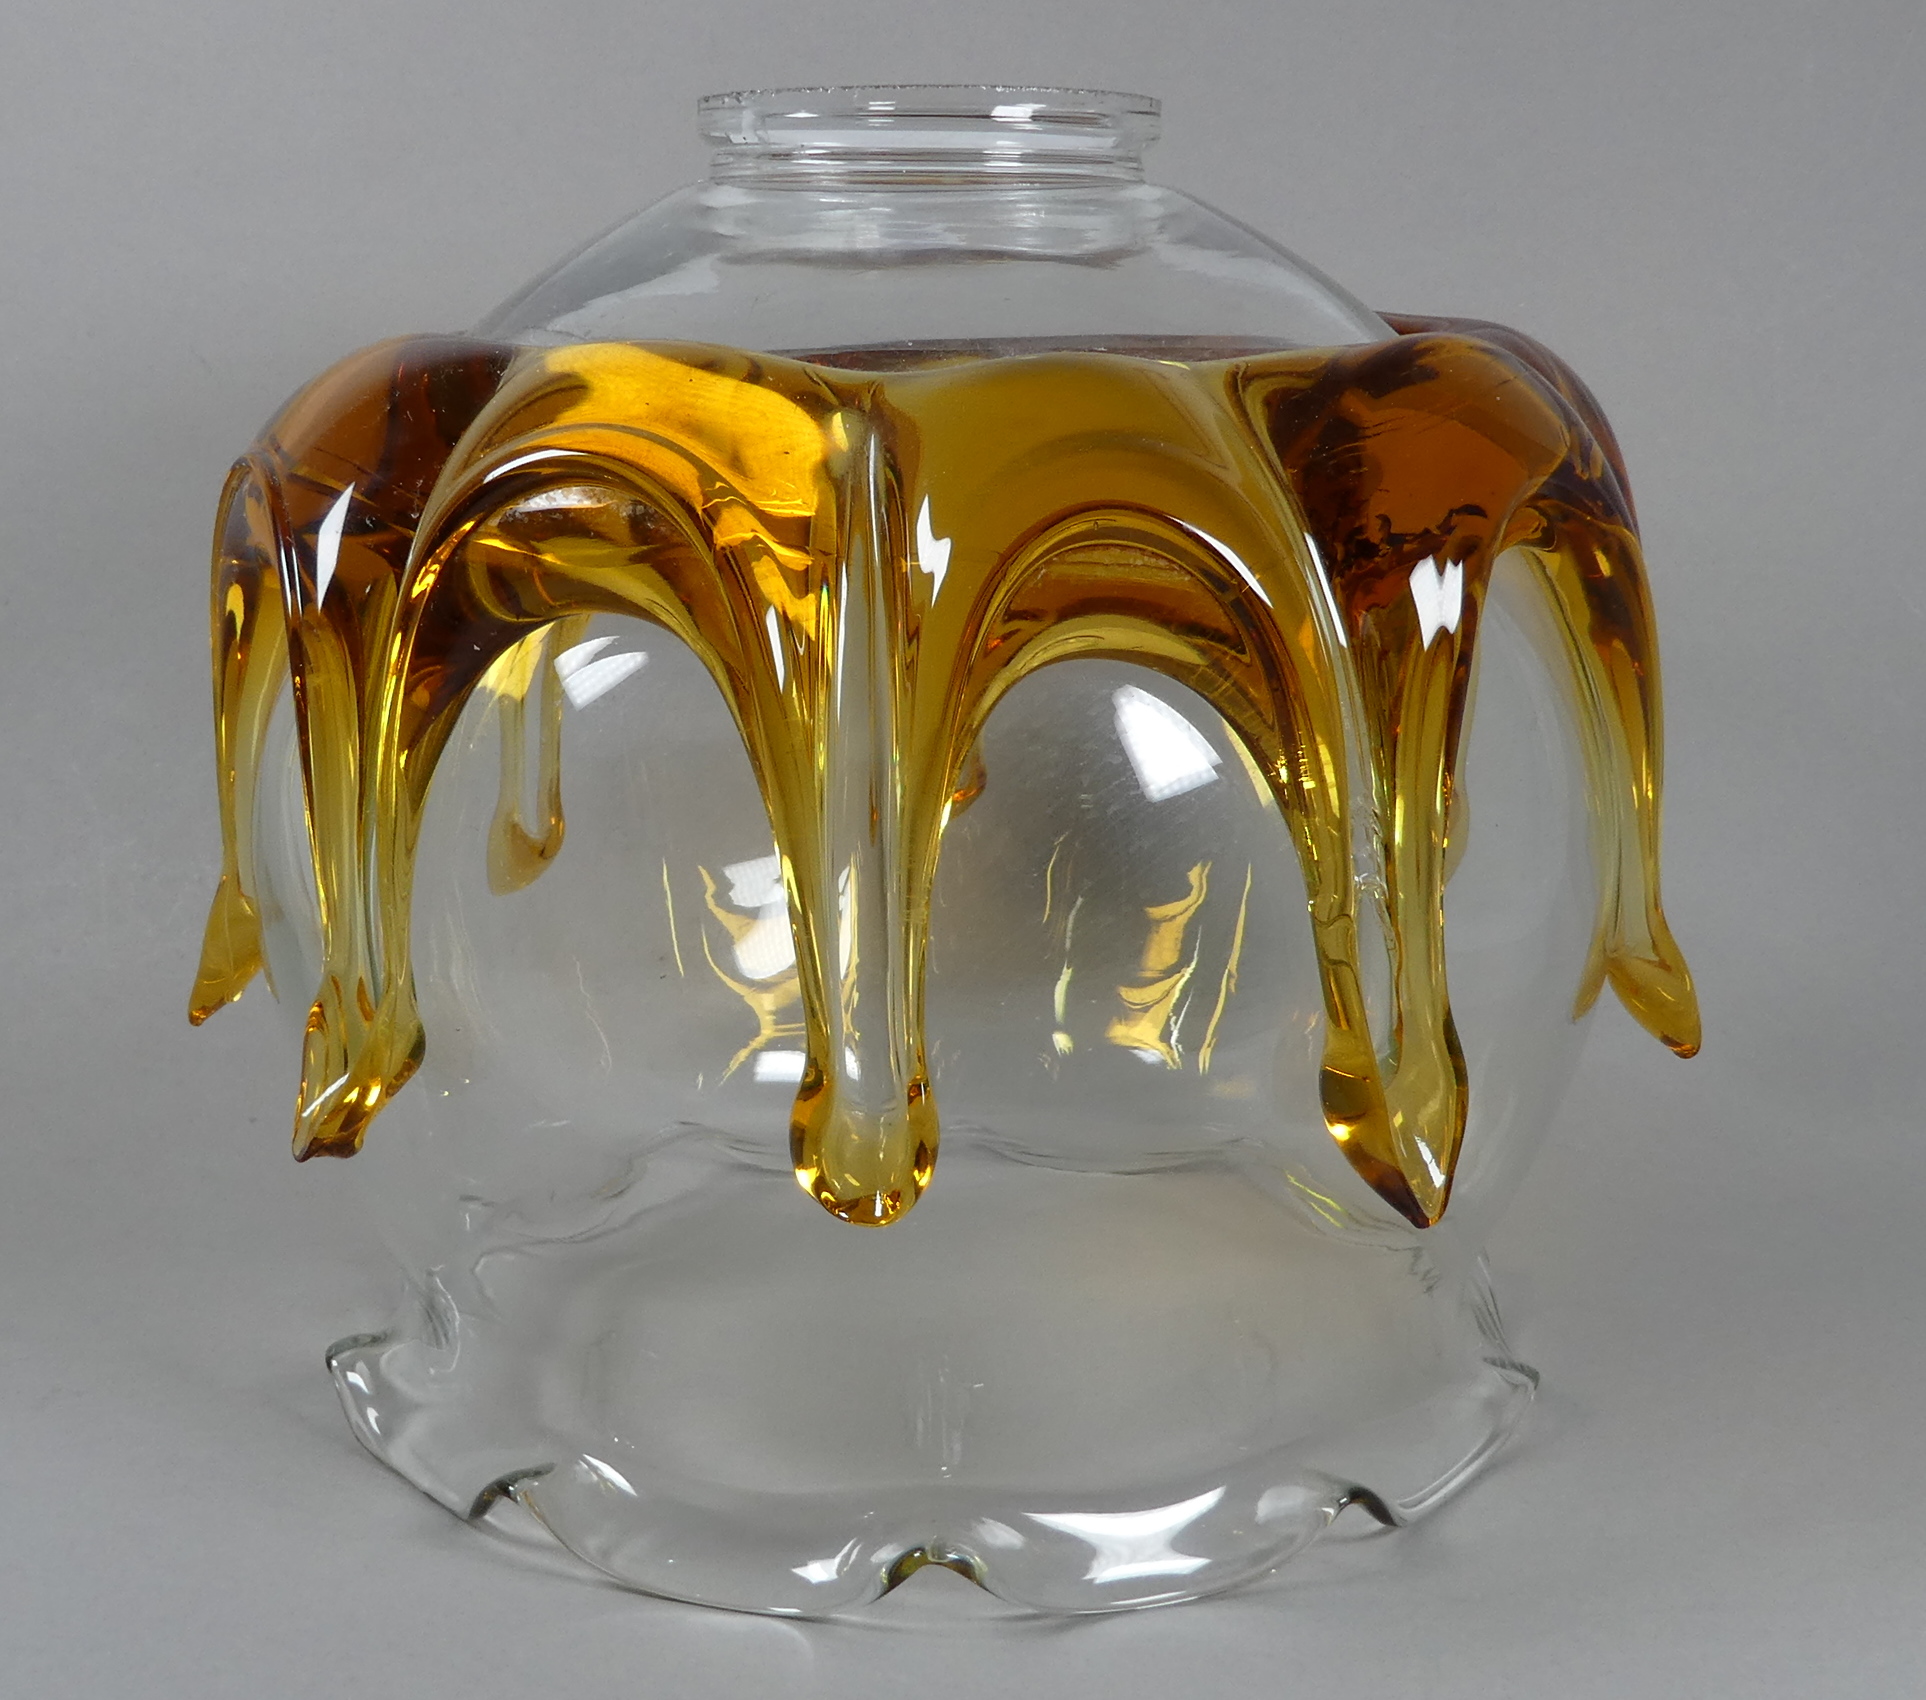 A contemporary Murano glass 'Splash' lightshade - diameter 24cm, height 22cm.